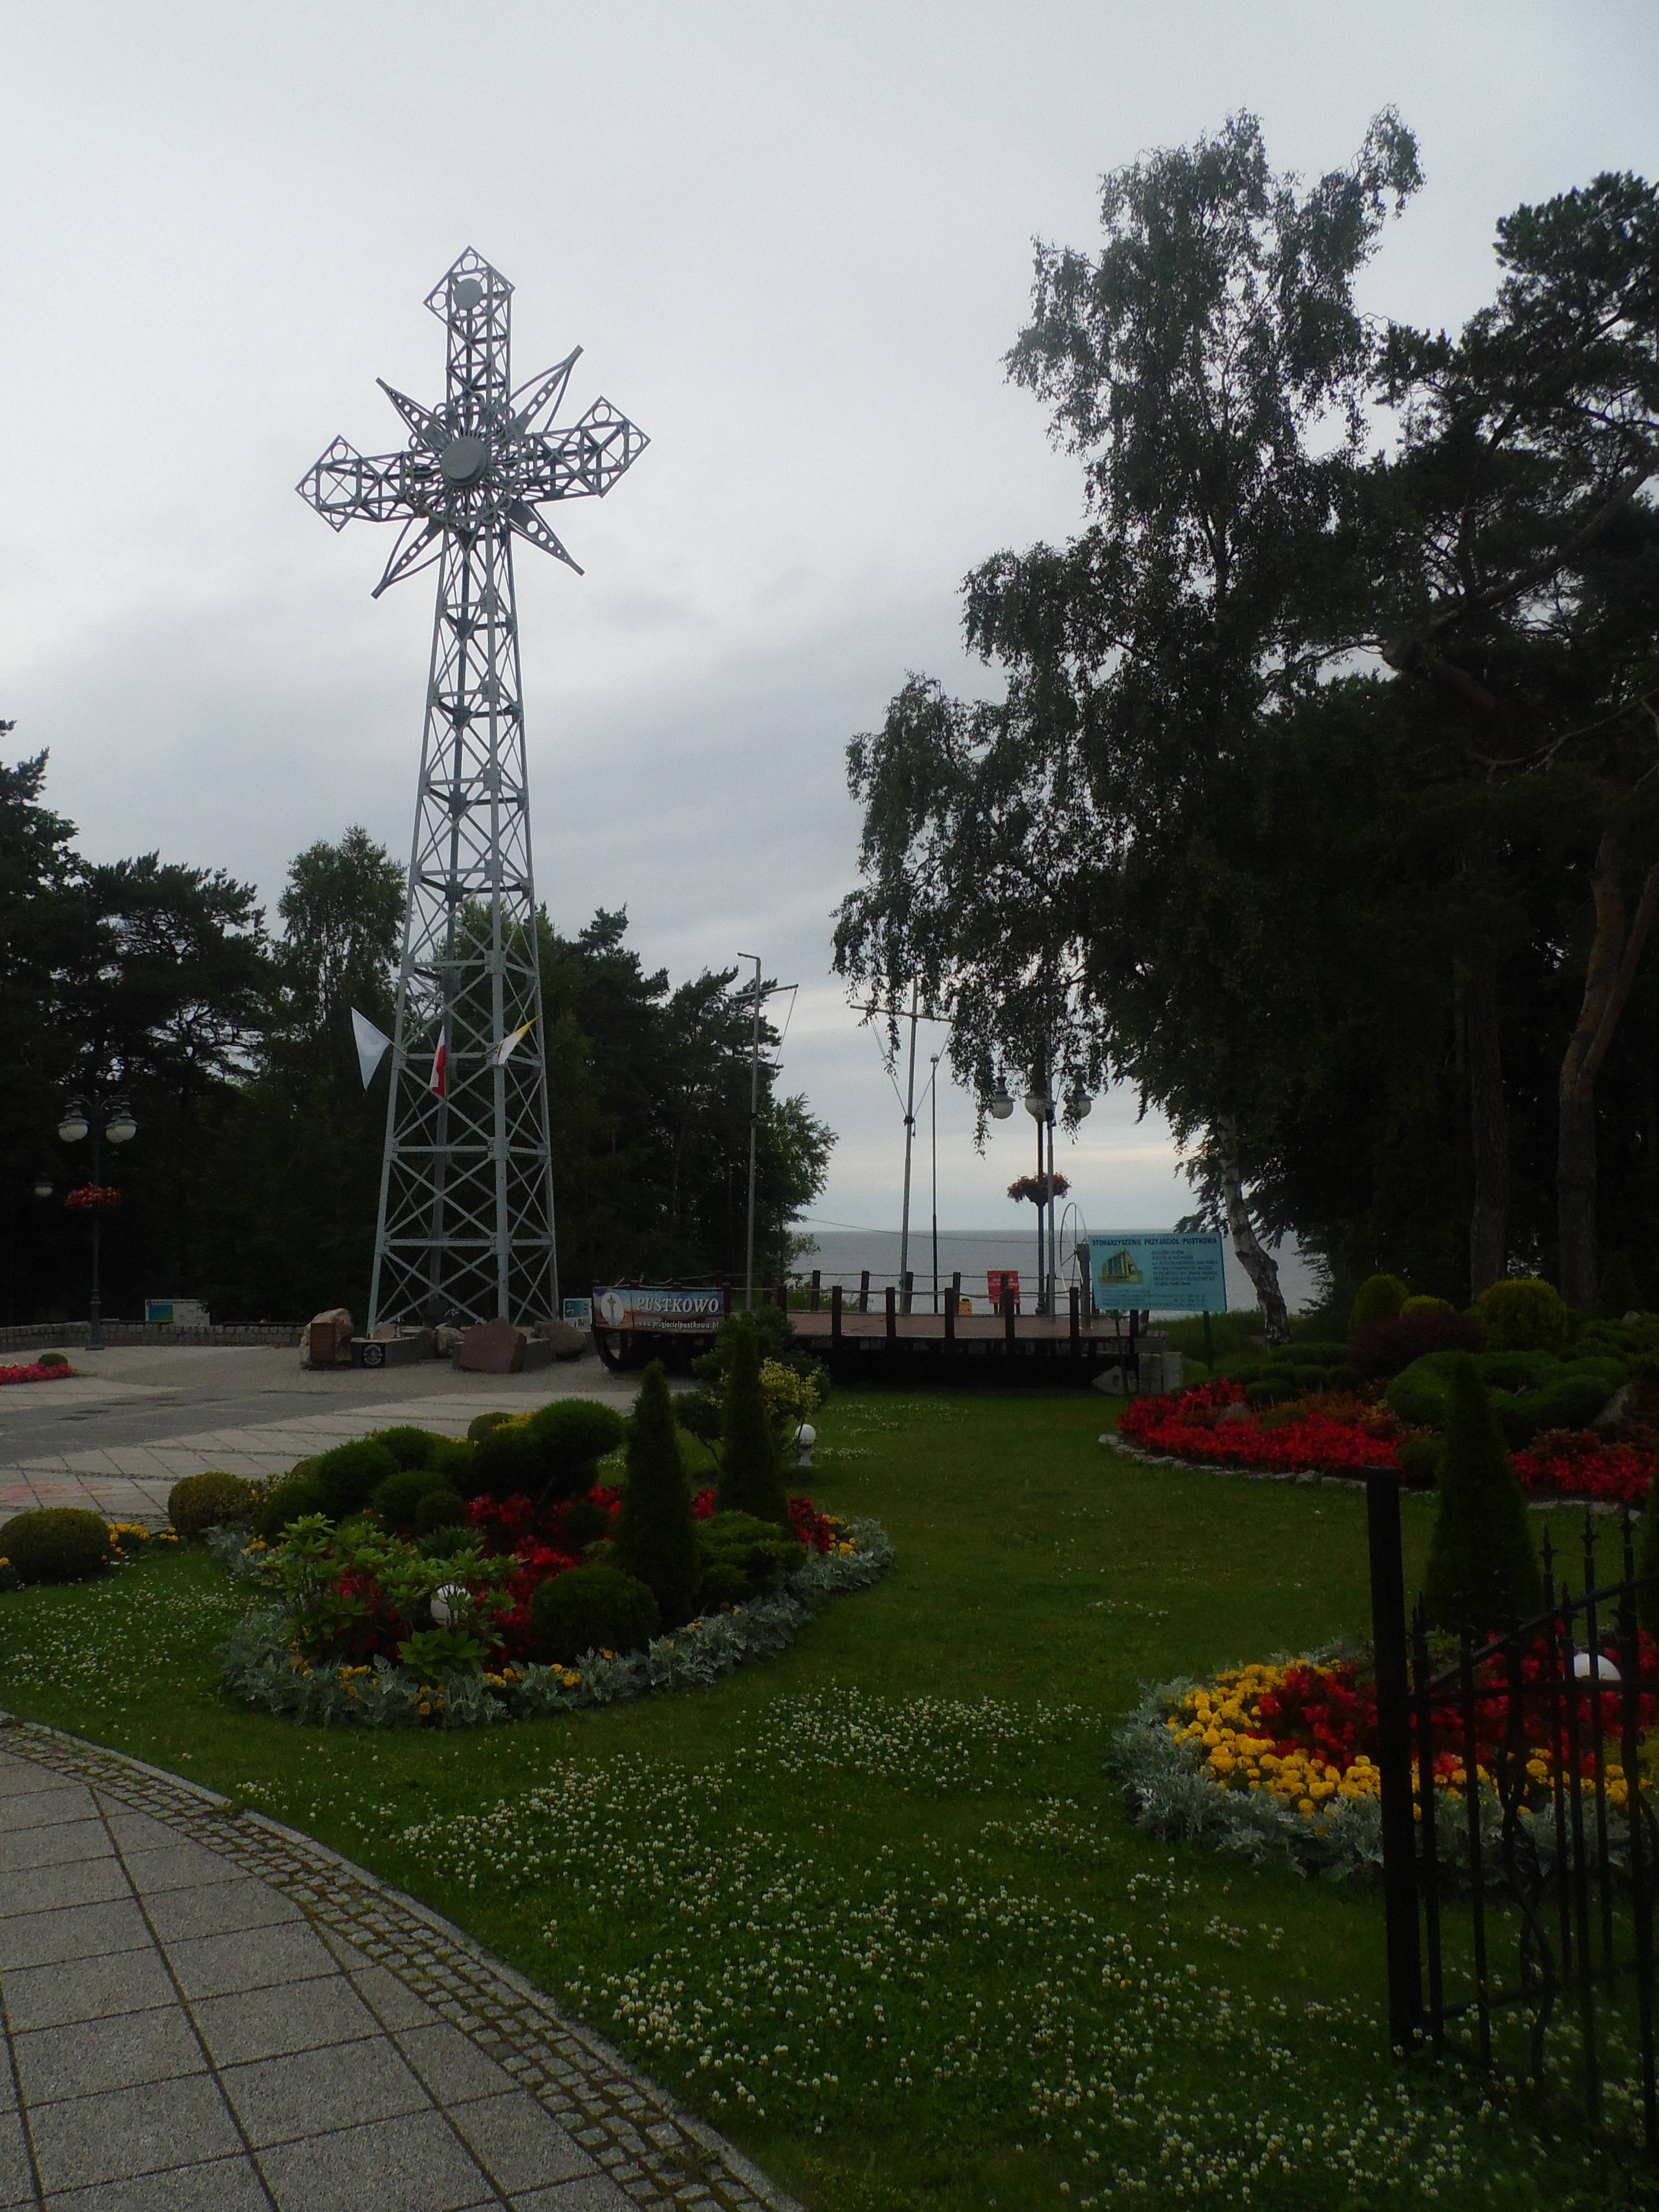 Krzyż w Pustkowie - jedna z atrakcji turystycznych miejscowości